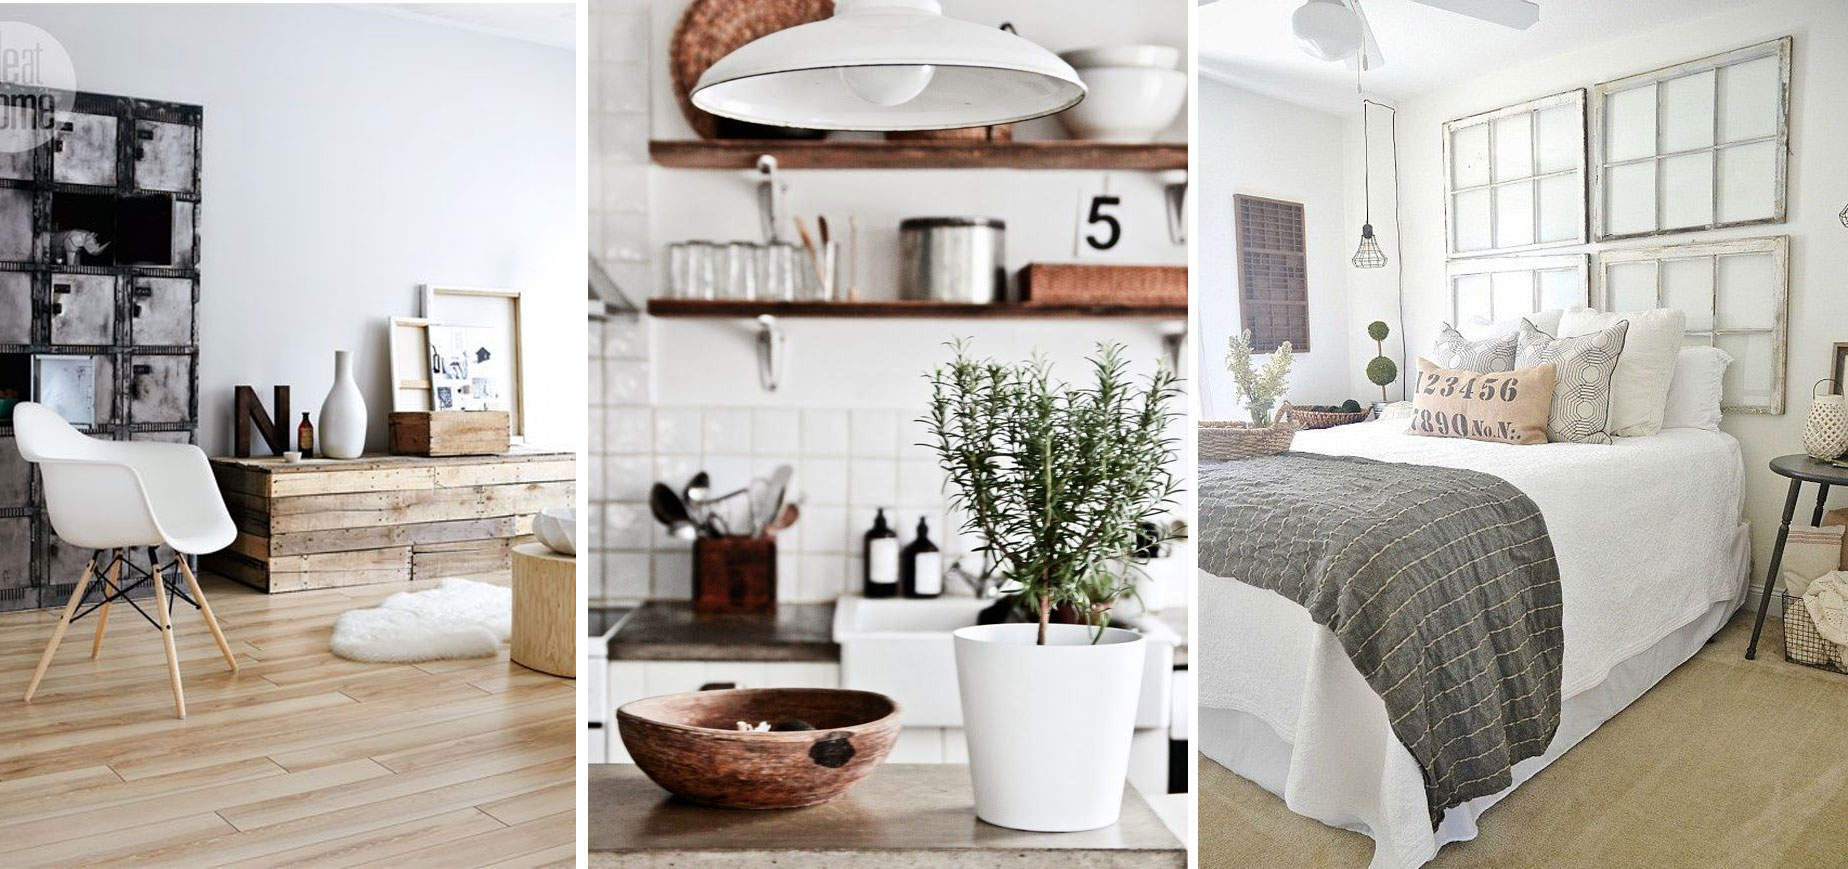 Nordico-industrial-estancias-decoracion-decoratualma-interiorismo-mezcla-estilos